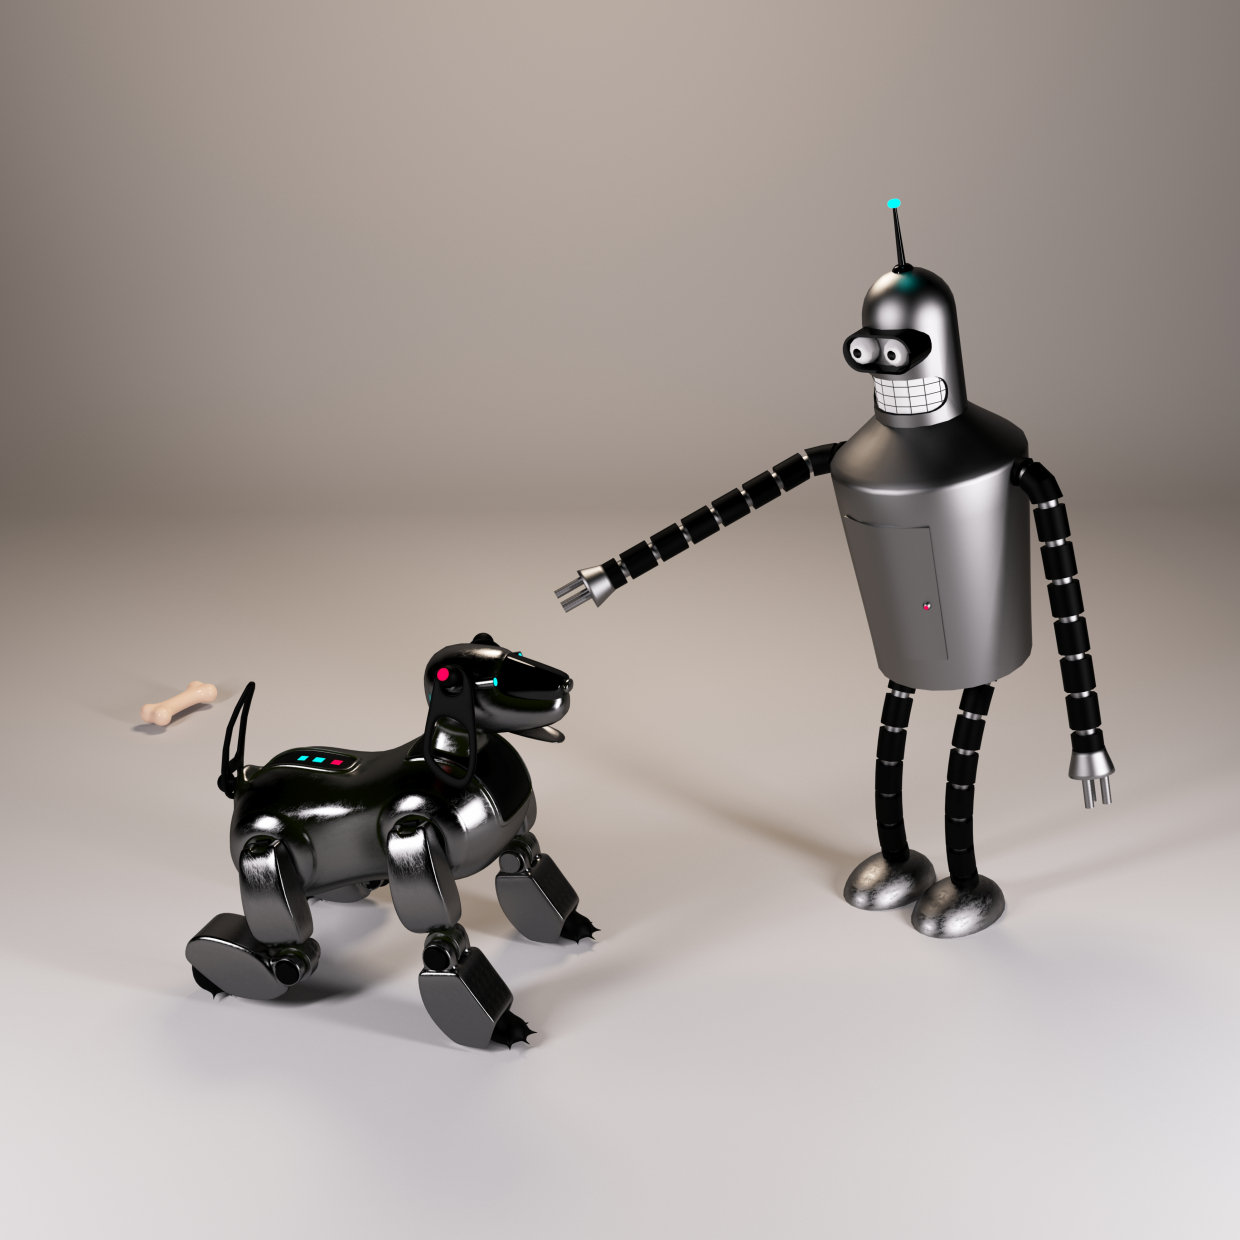 Bender_and_dog в 3d max corona render изображение